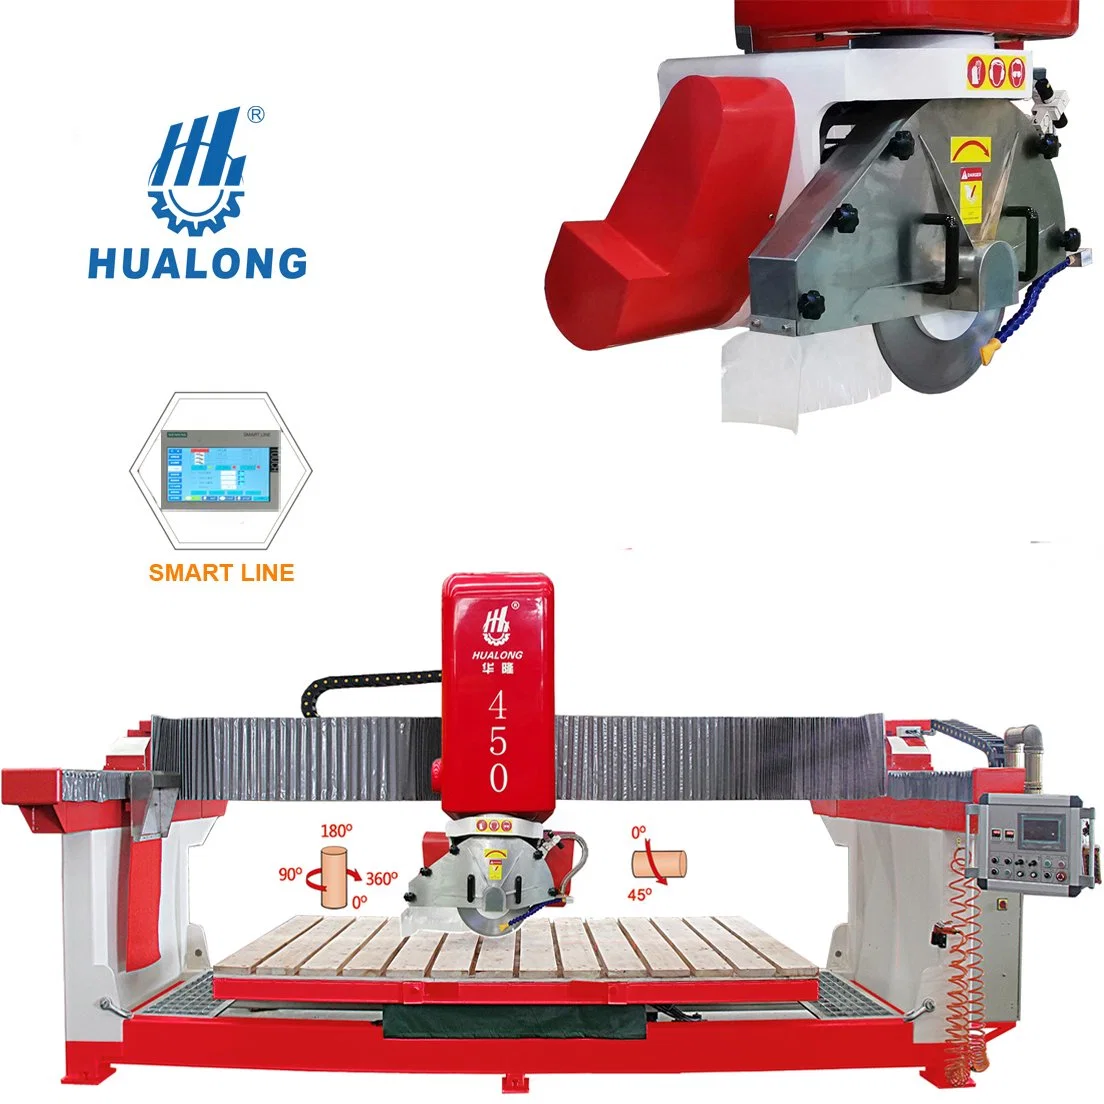 Hualong Hlsq-450 nouveau pont de la Chine a vu le granit et marbre Machine de découpe CNC pour la vente en ligne droite à 45° coupe charmant Fonction de coupe